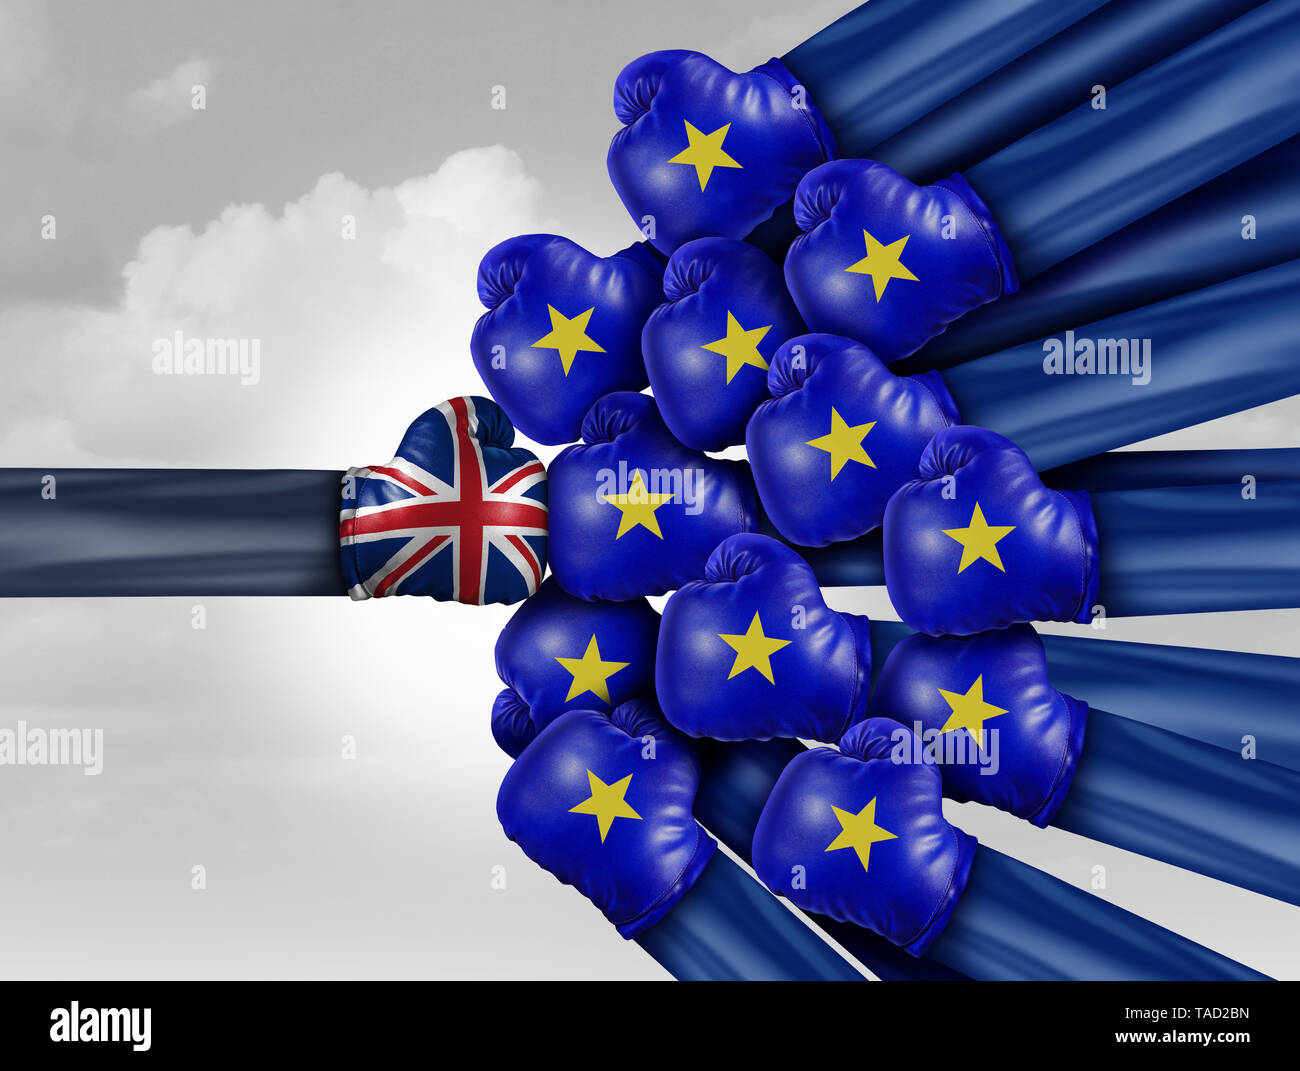 Regno Unito Europa e dei problemi nel Regno Unito l' adesione all' Unione europea referendum commercio UE sfida e in conflitto con i partner di opposti. Foto Stock